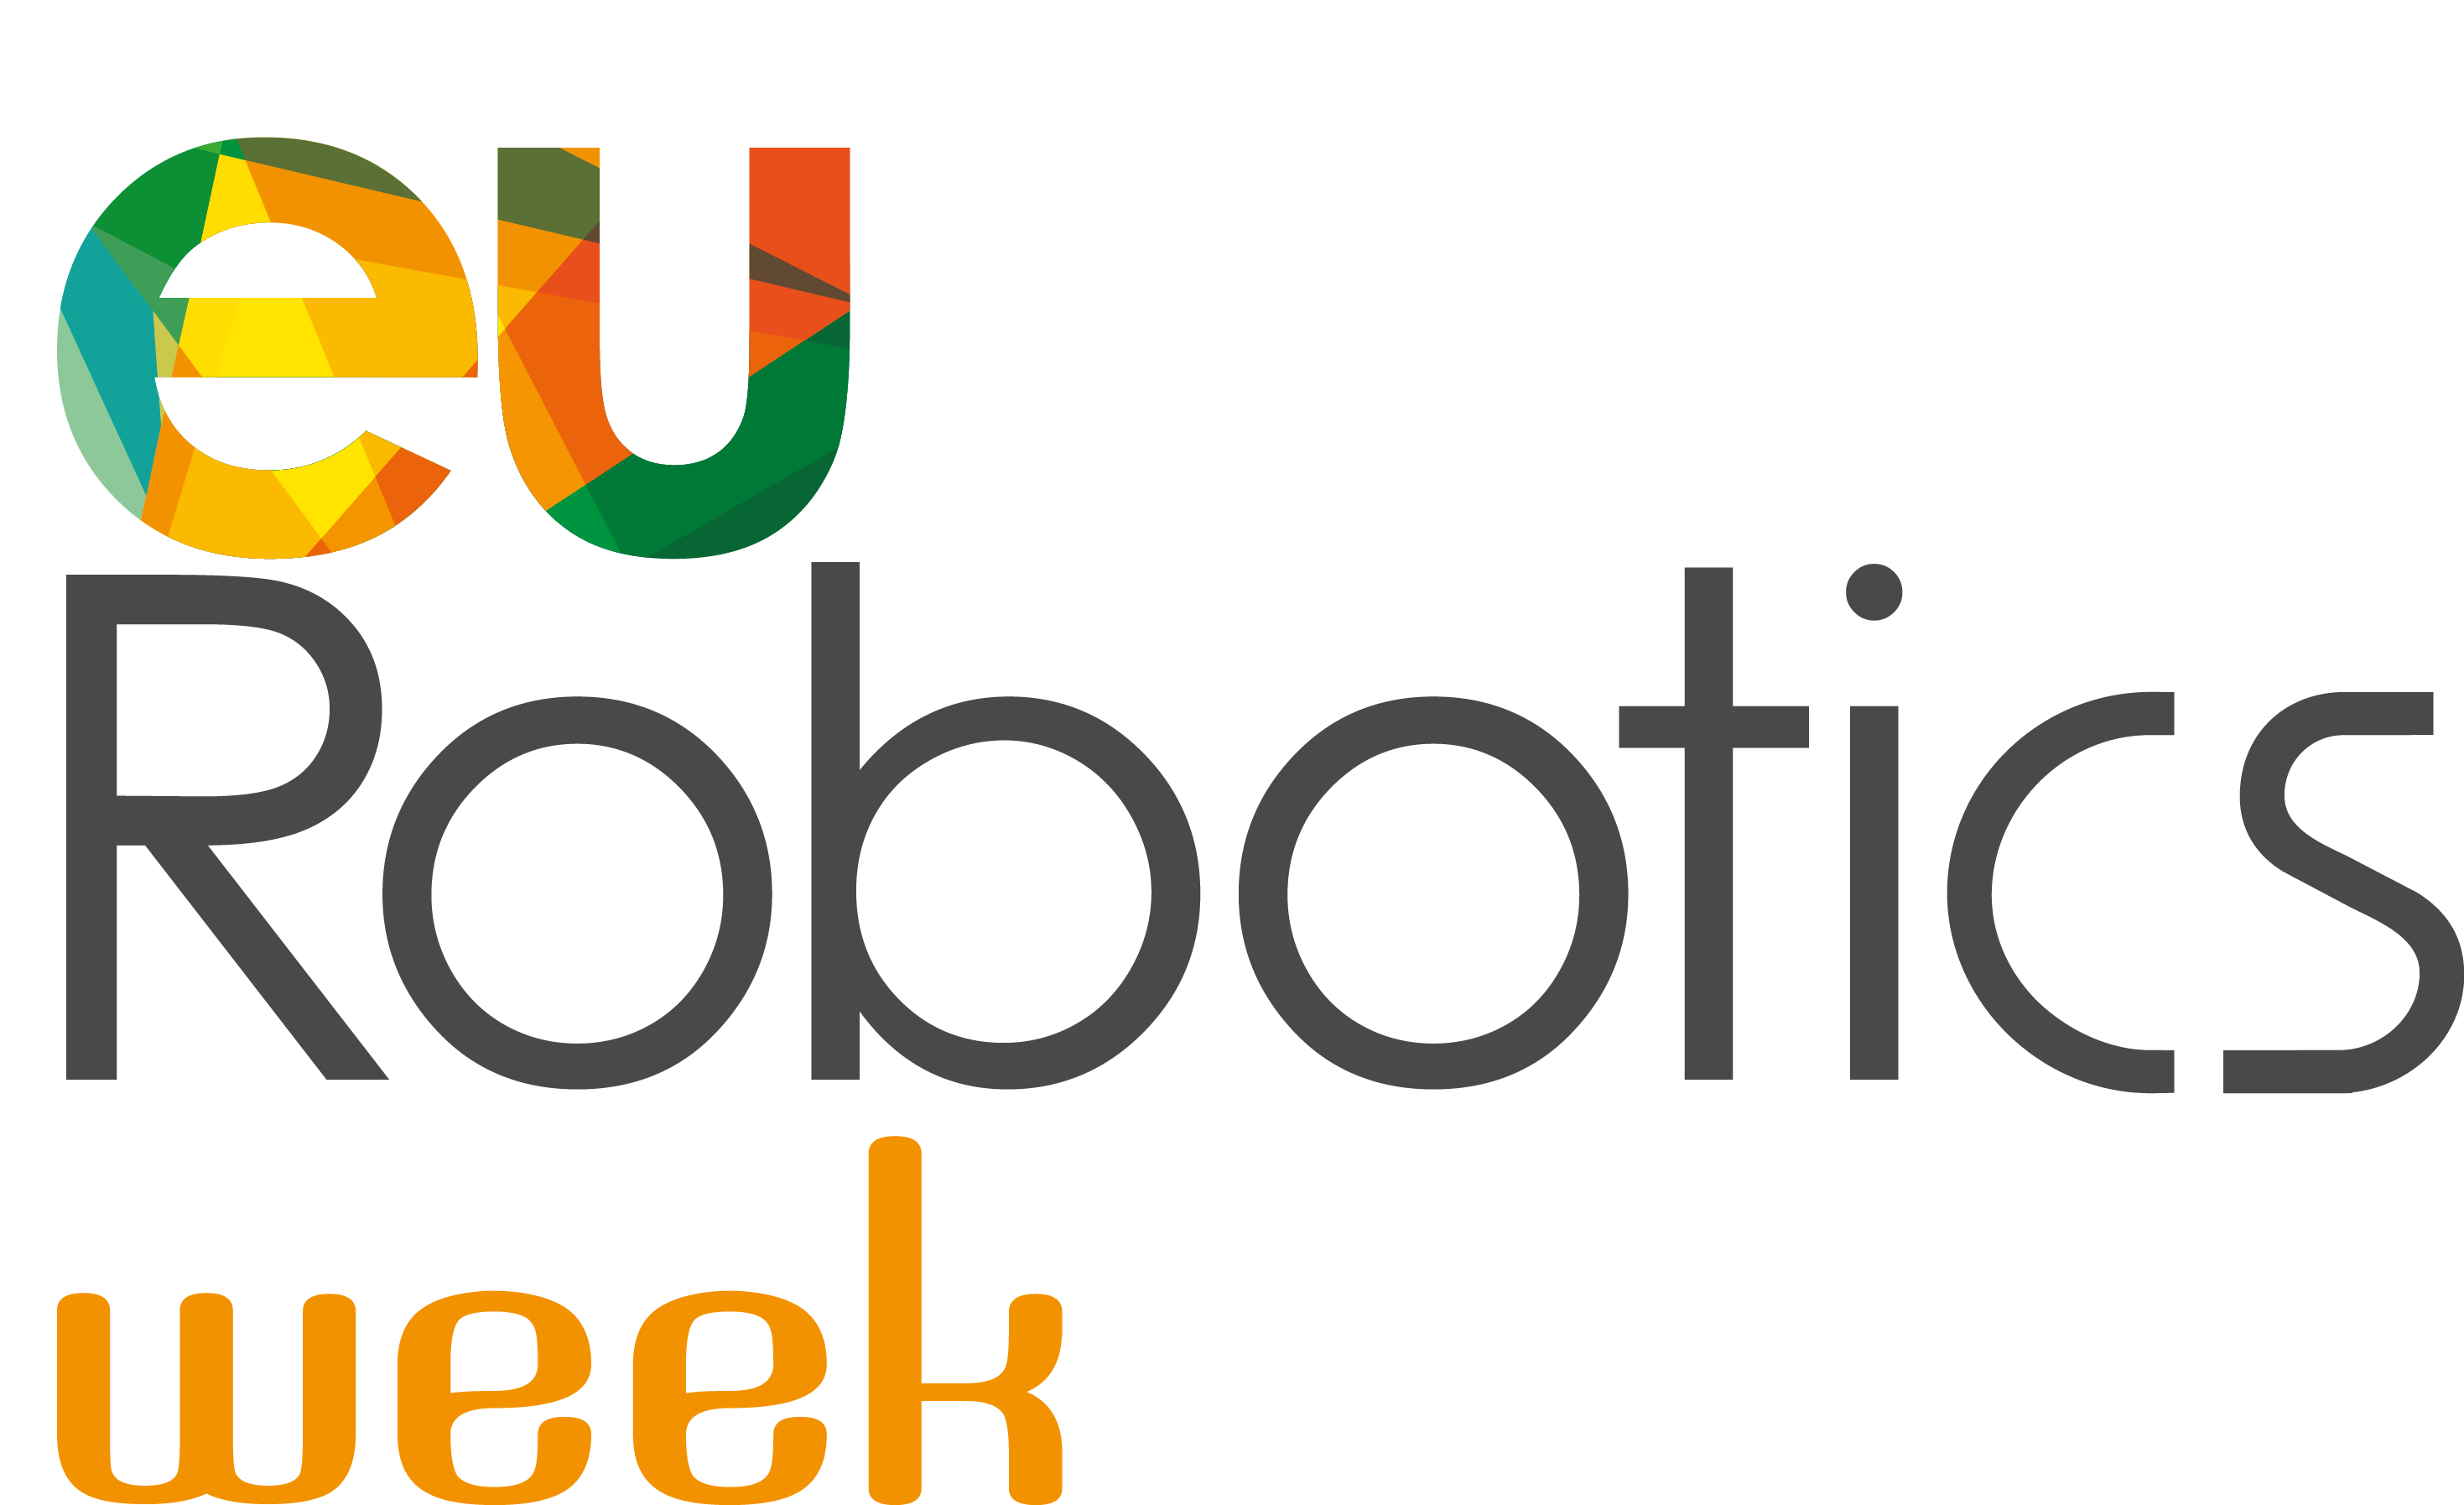 Eu-Robotics Week